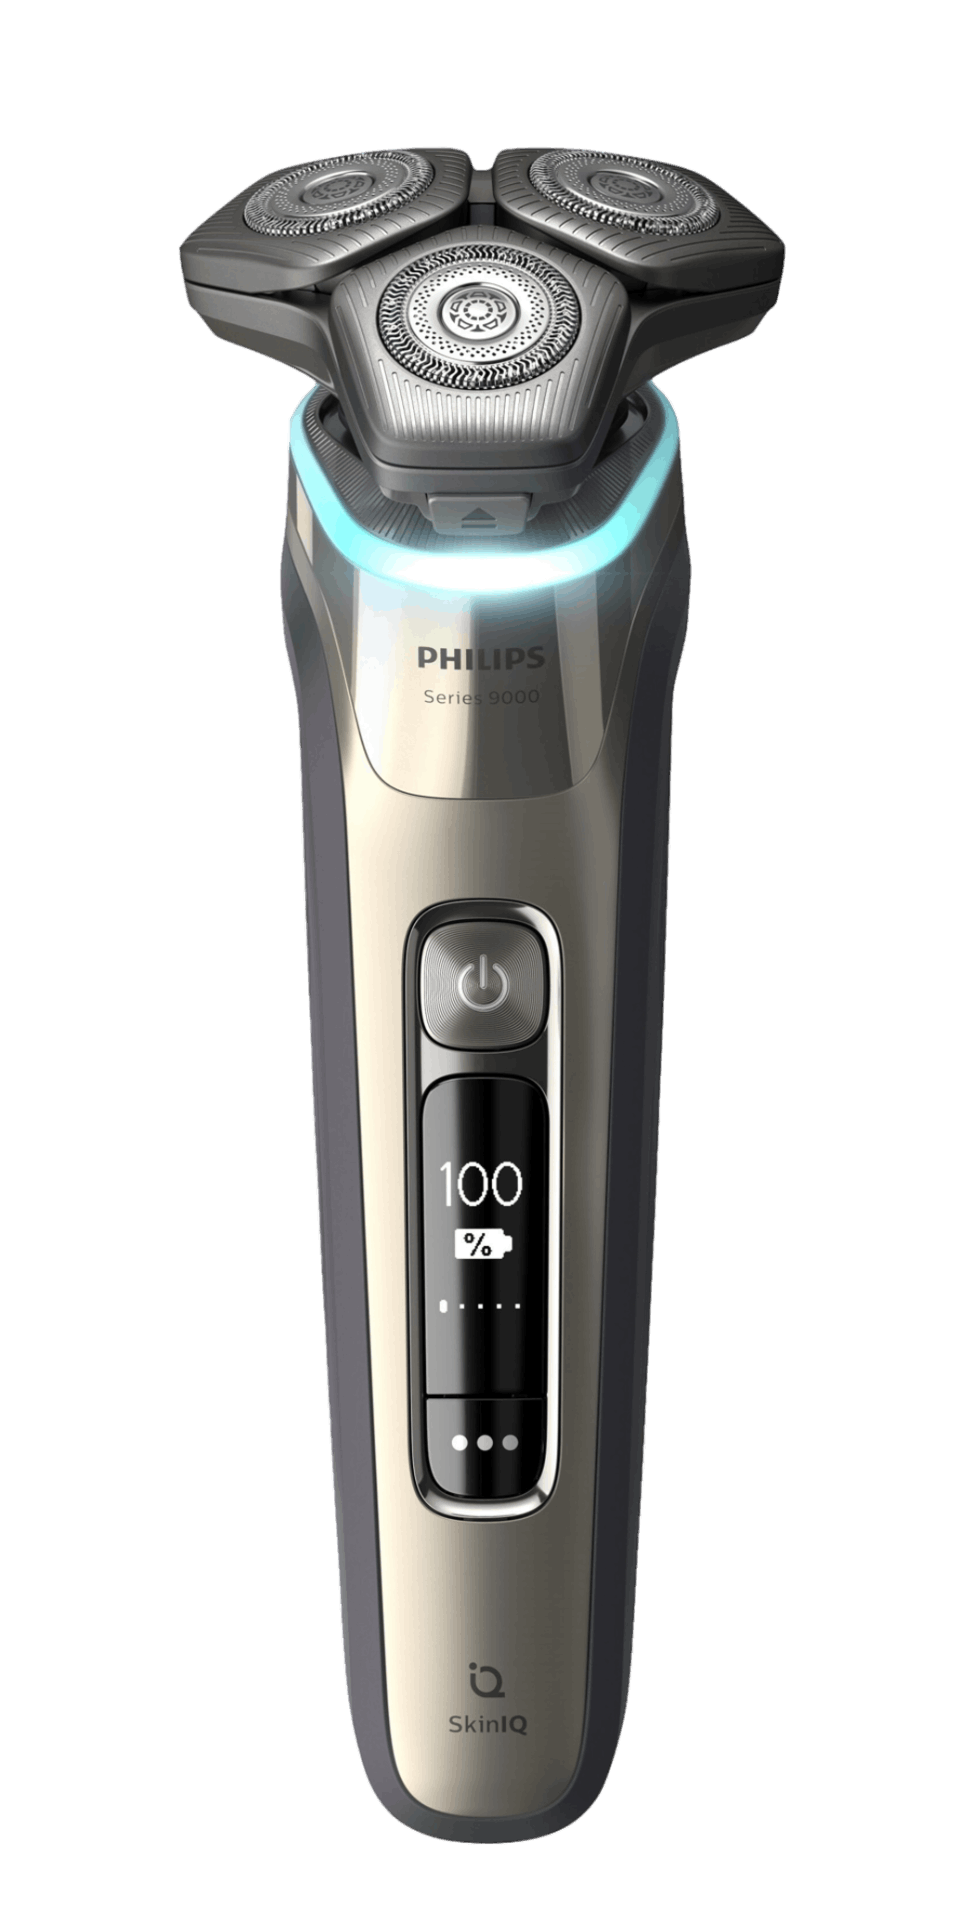 Afeitadora S9000 con tecnología SkinIQ